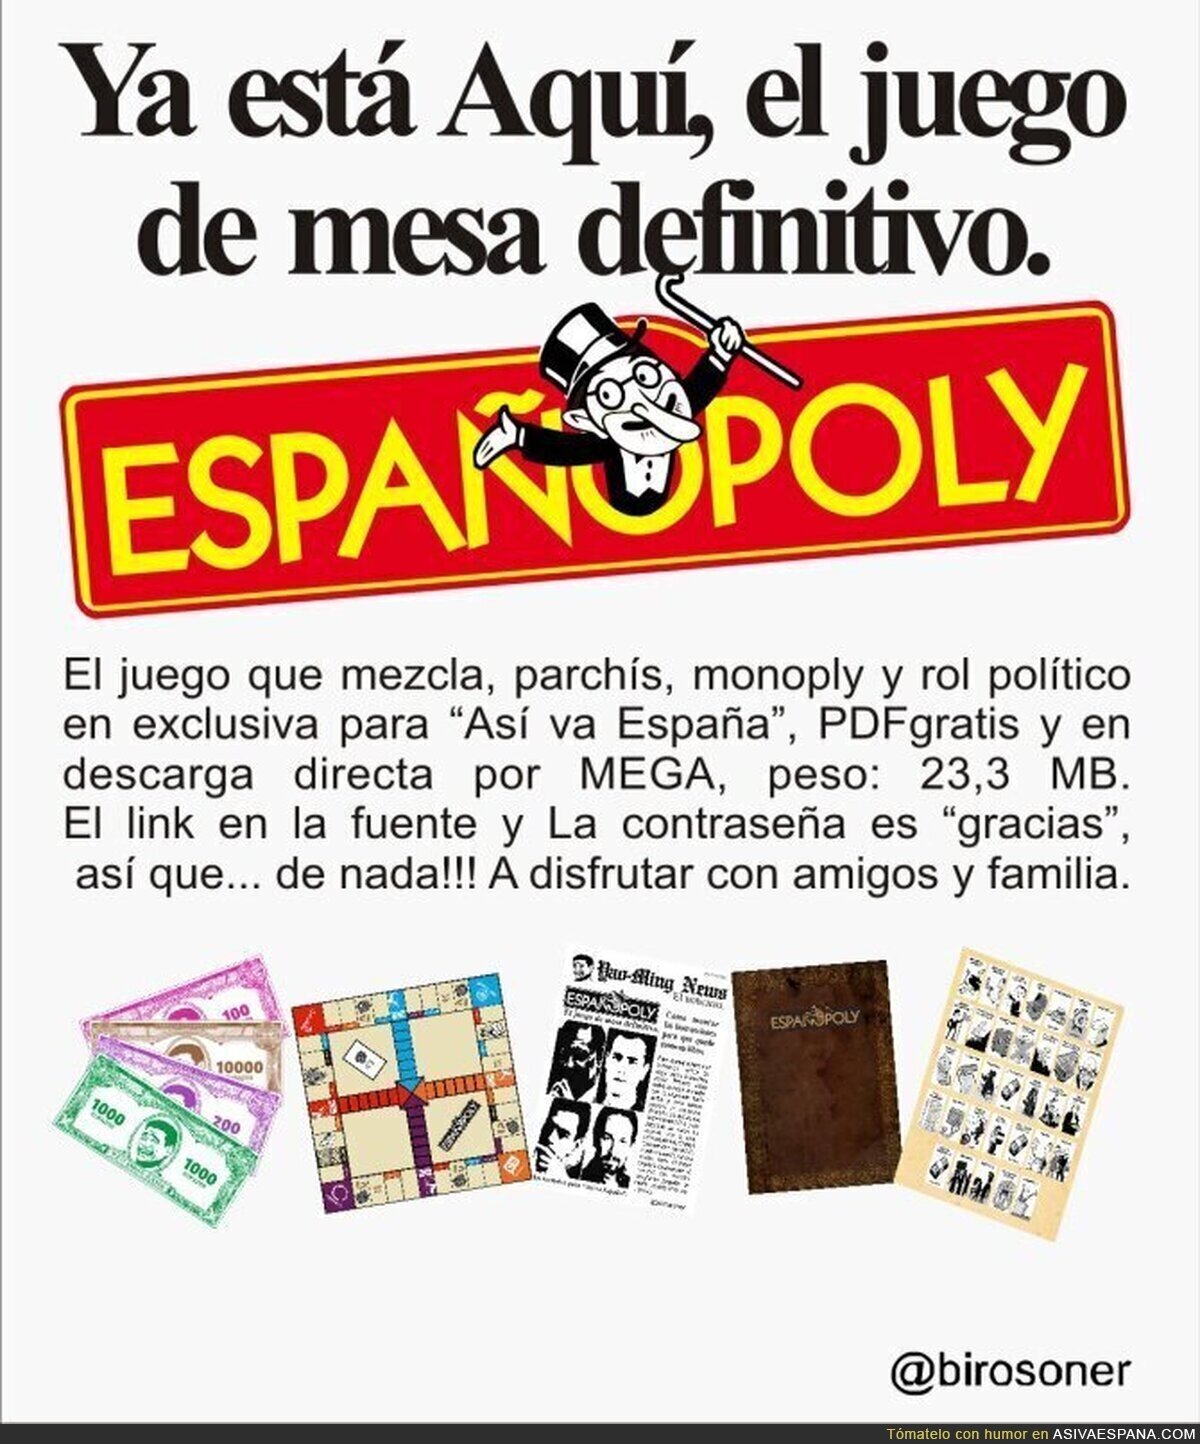 ESPAÑOPOLY, ¡ya disponible! en exclusiva para "Así va España"